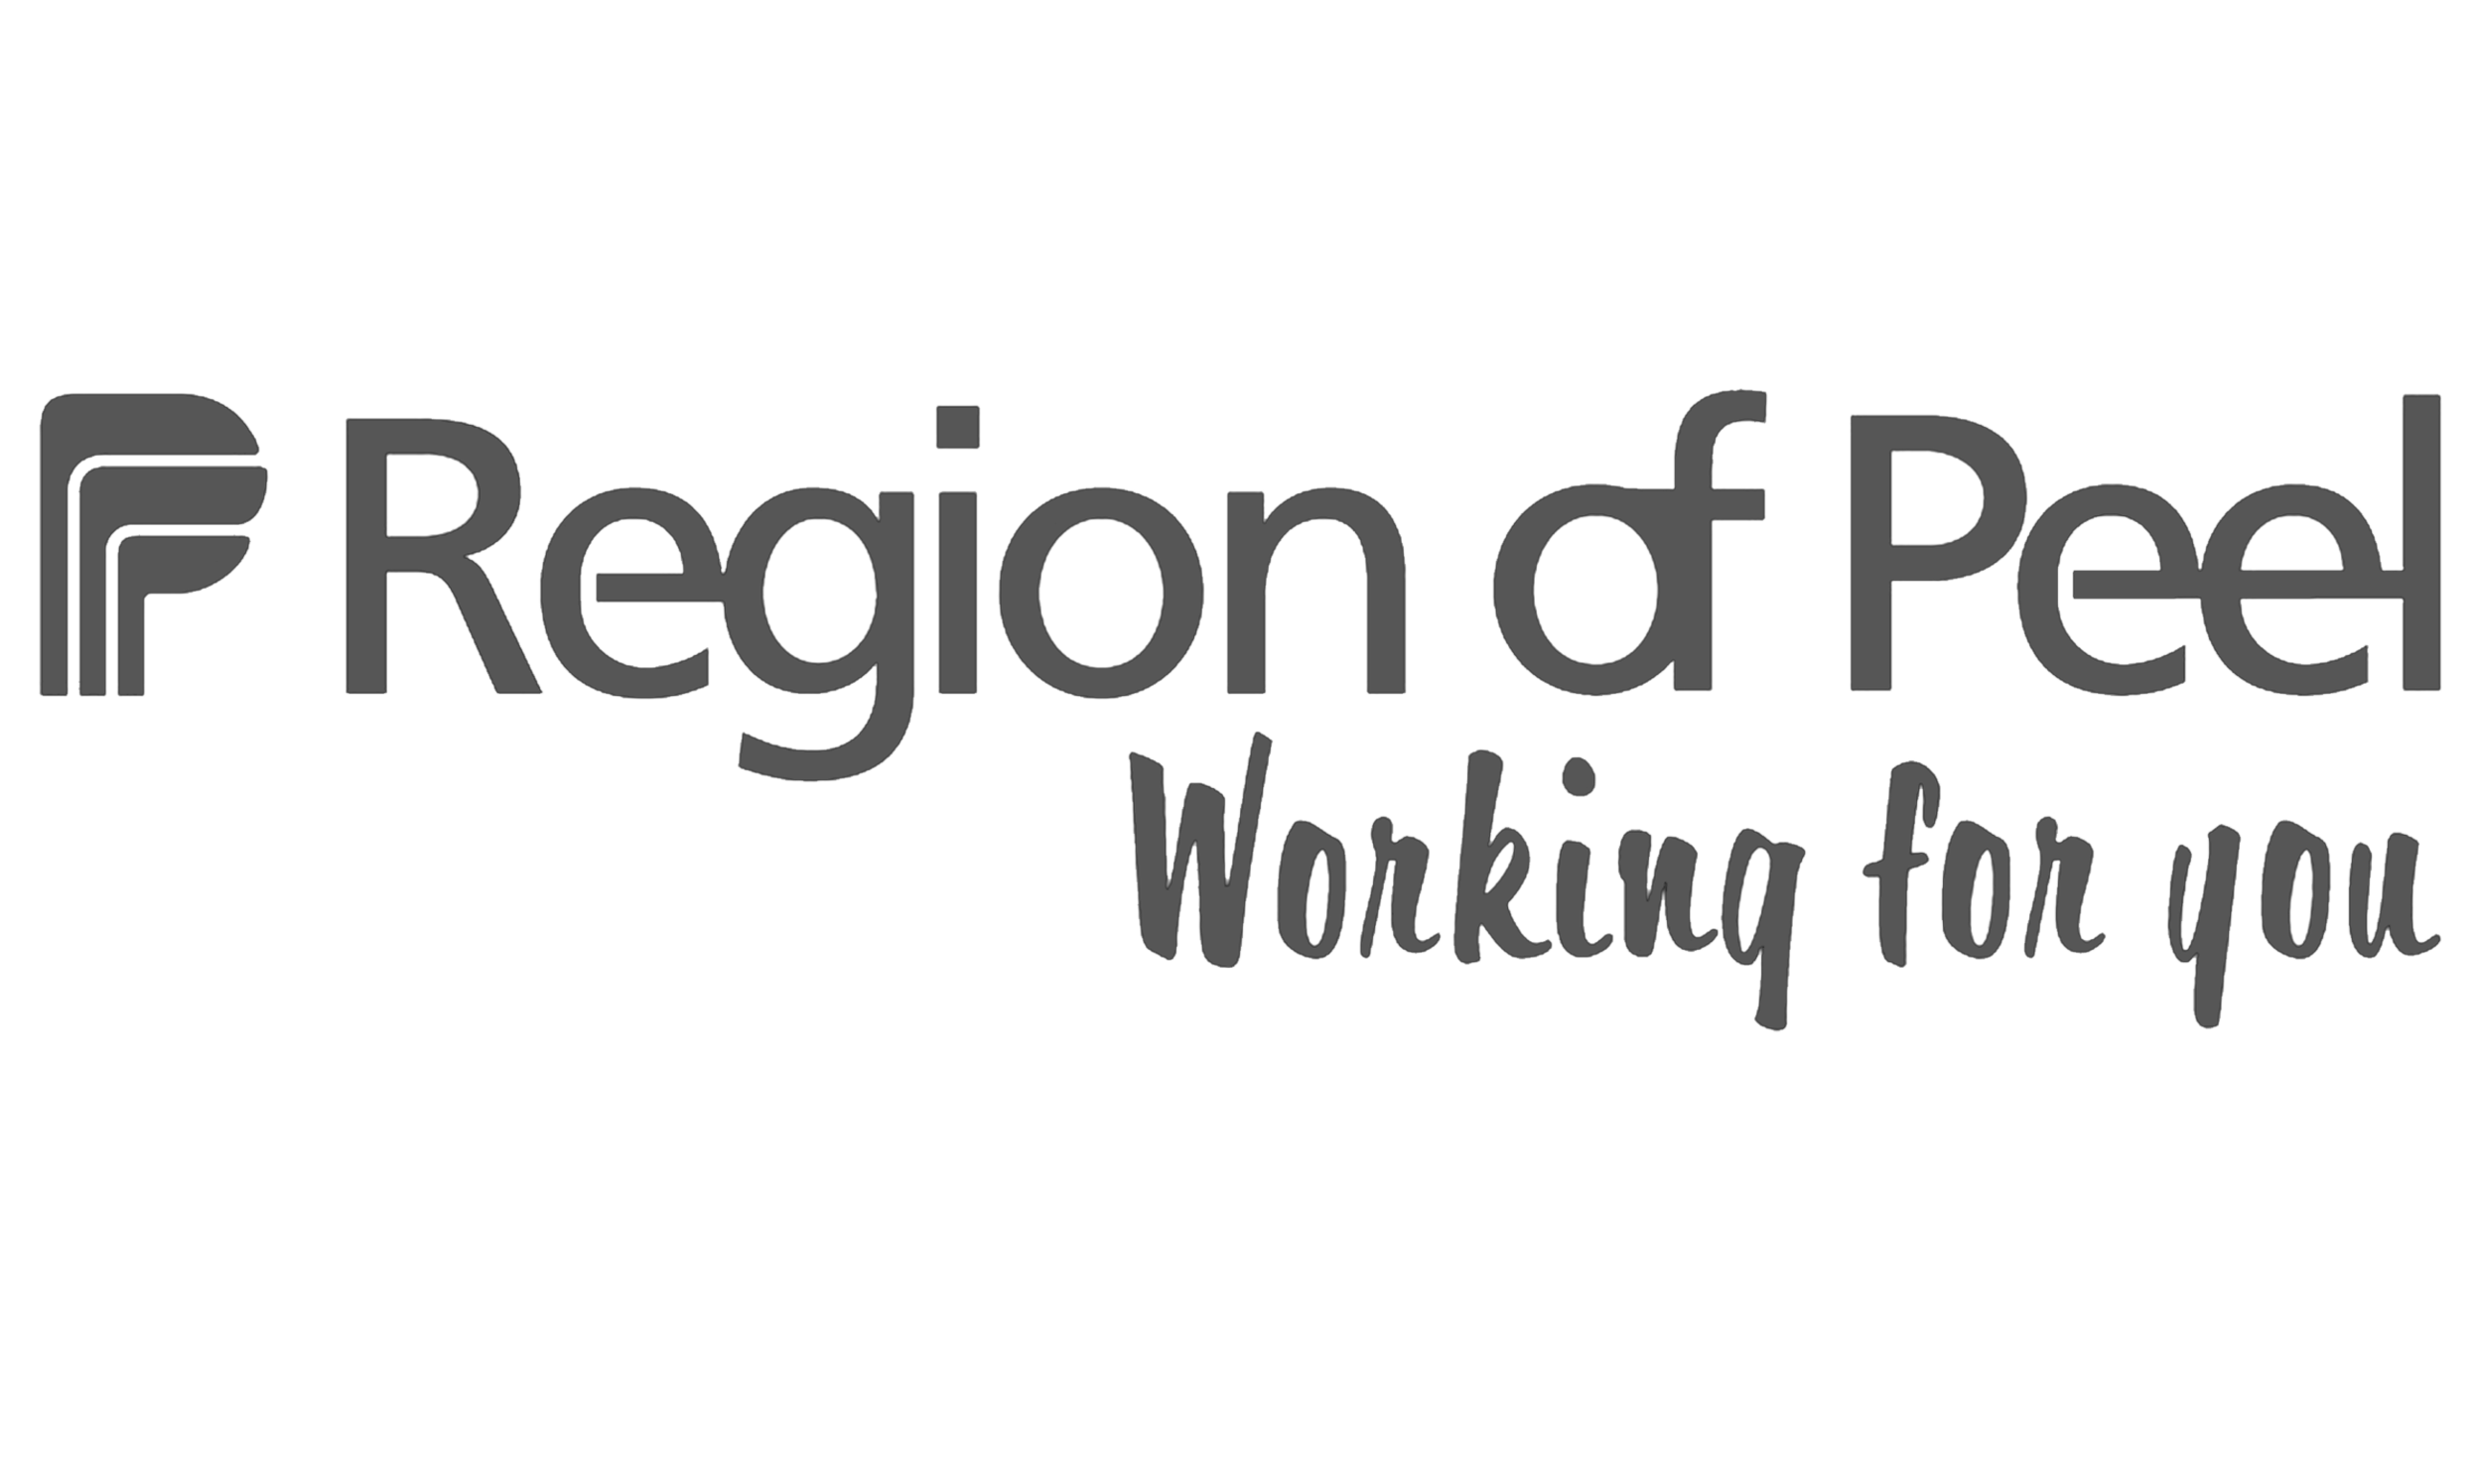 Region of peel logo.png